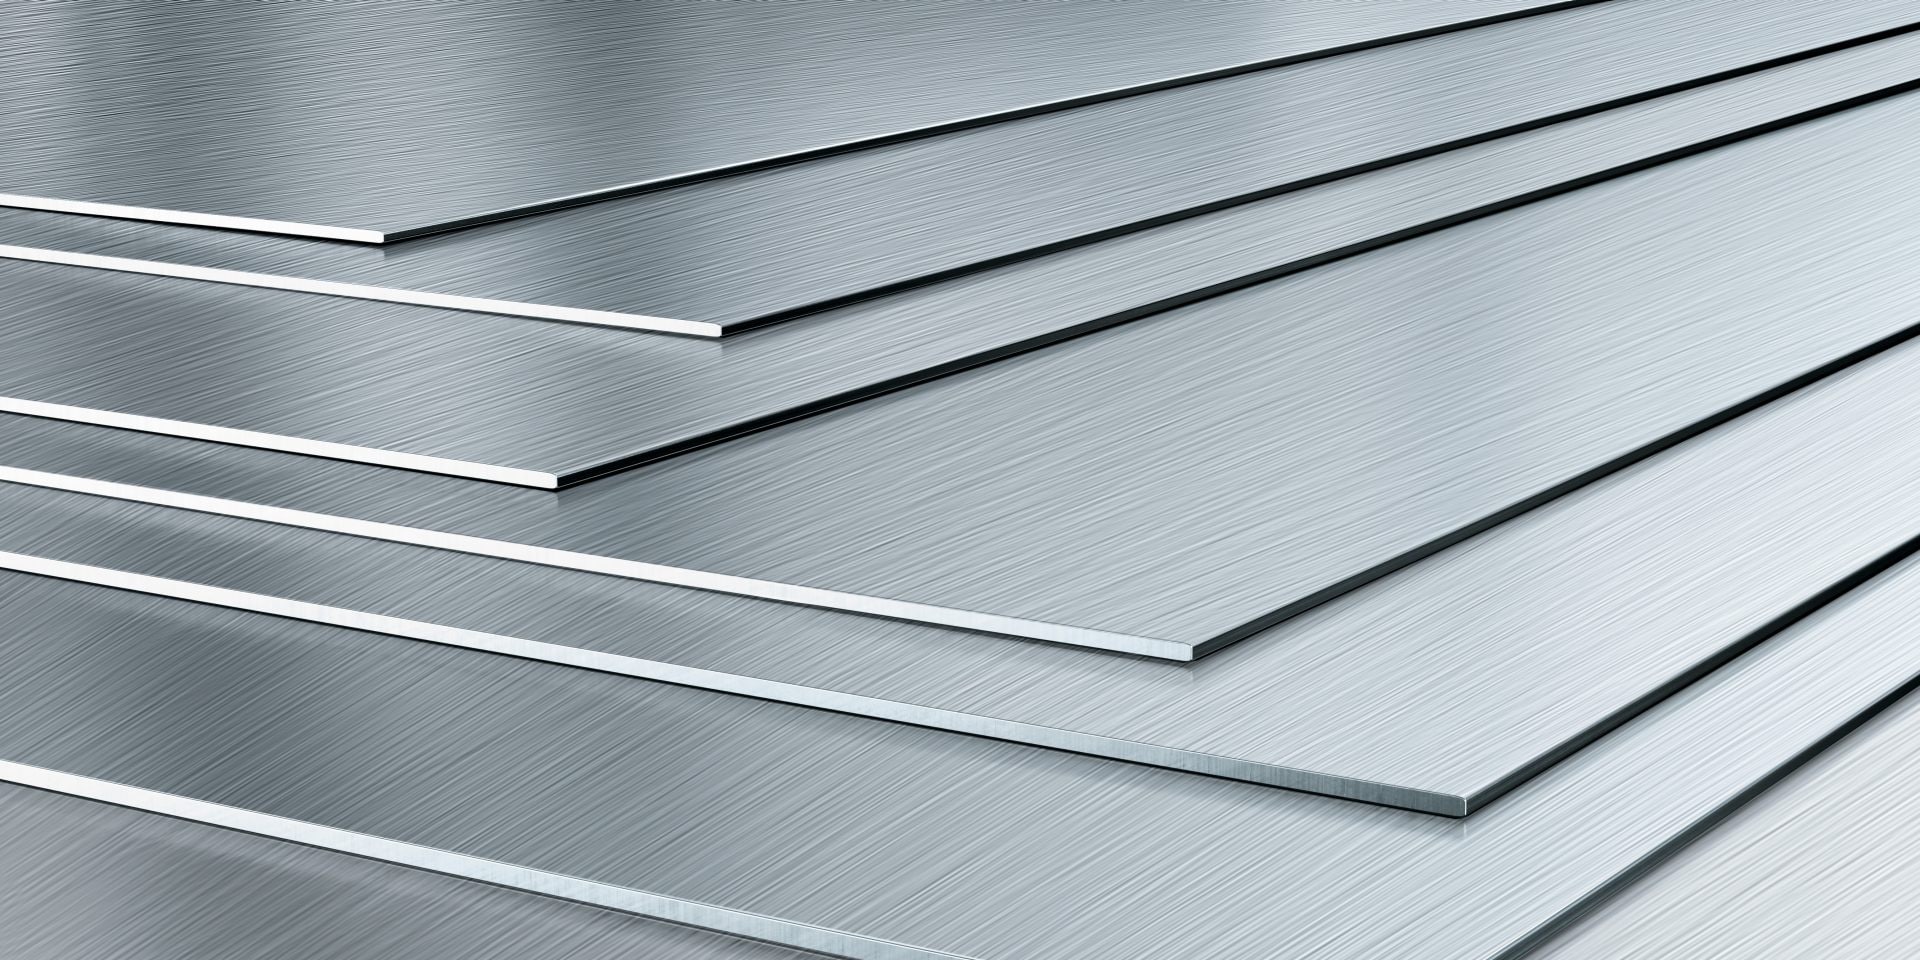 Image of steel sheet metal